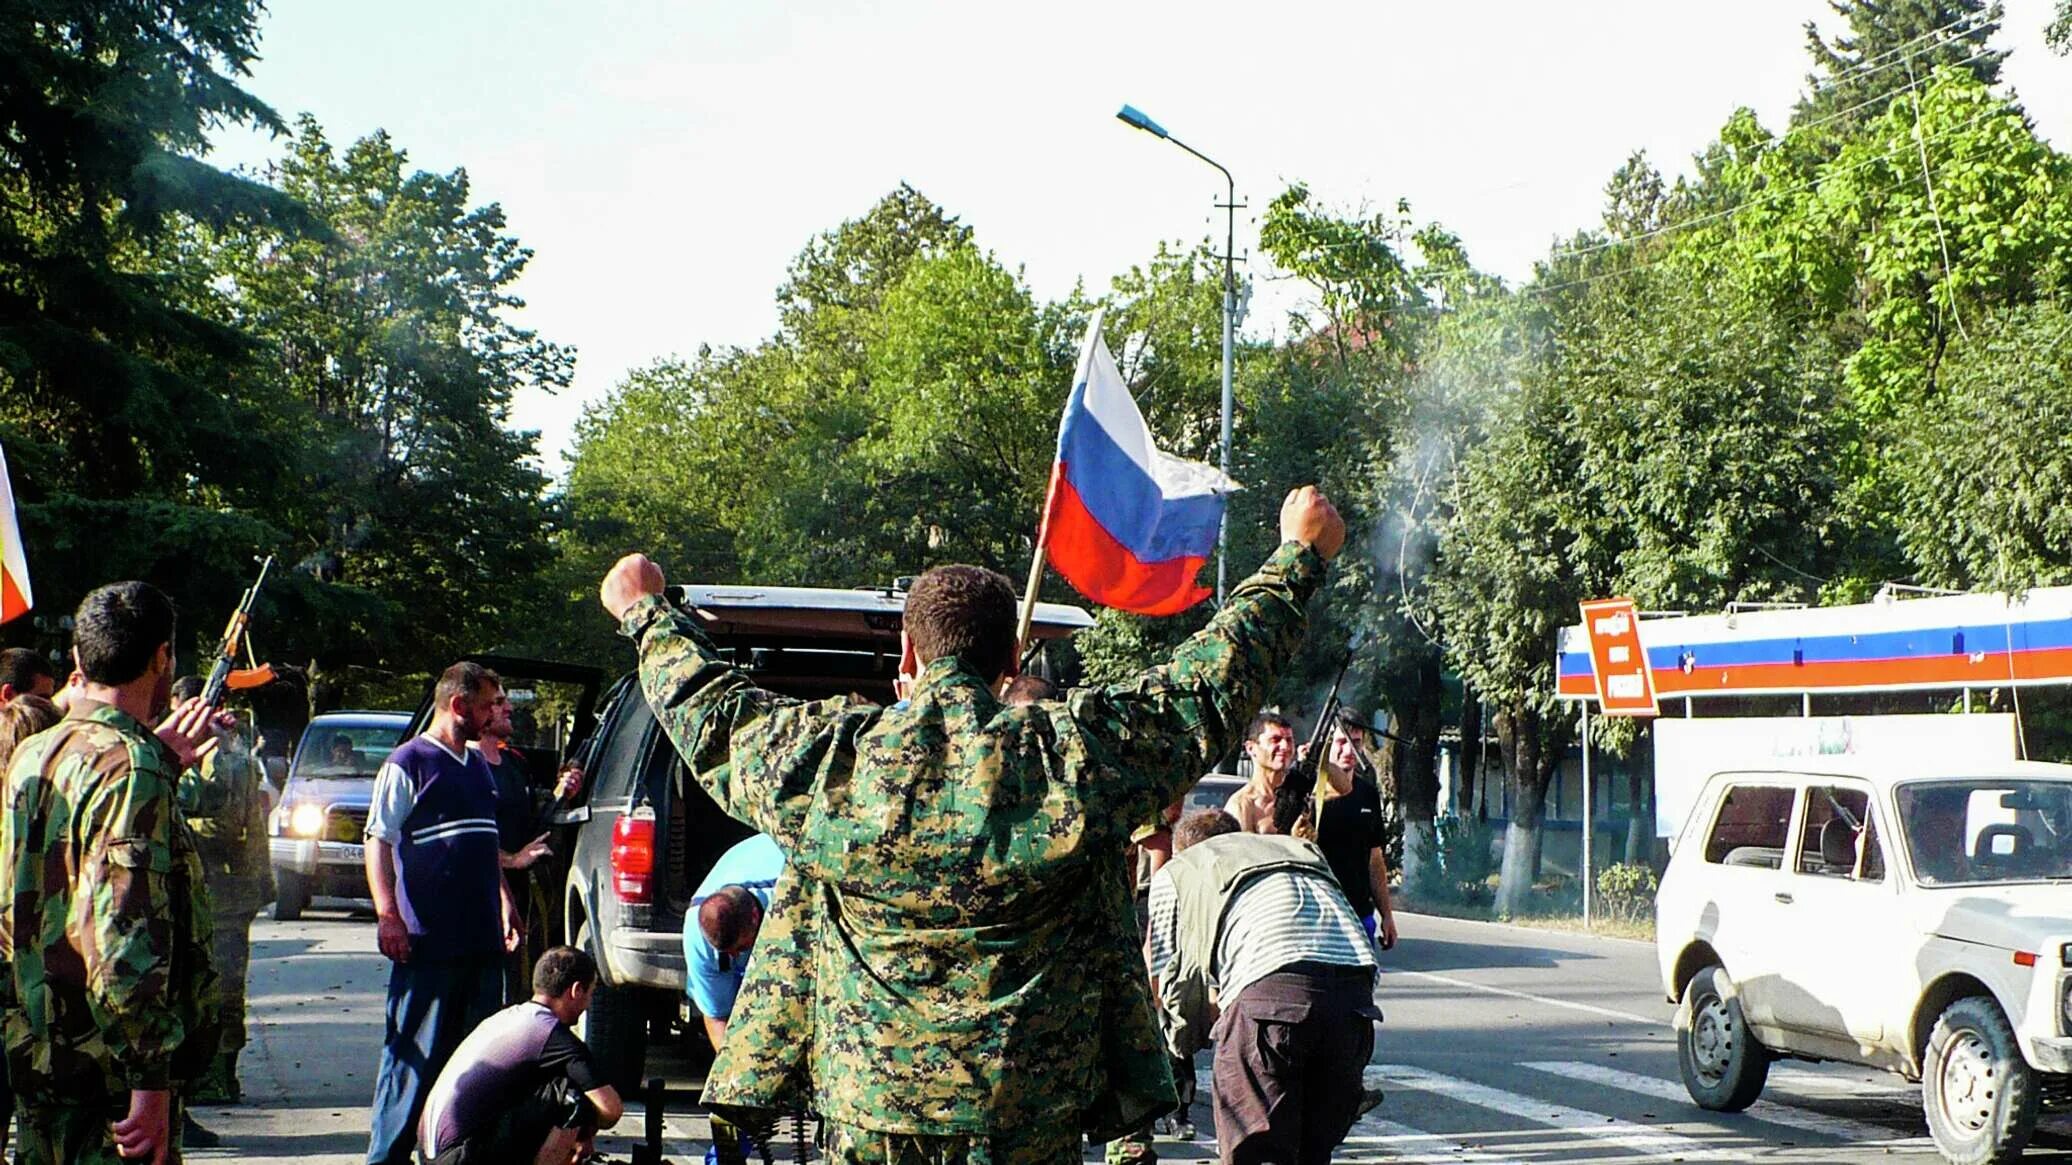 Южная осетия год независимости. 26 Августа 2008 независимость Южной Осетии. 26 Августа день признания независимости Южной Осетии. Цхинвали Южная Осетия 2008. Миротворцы РФ В Южной Осетии 2008.